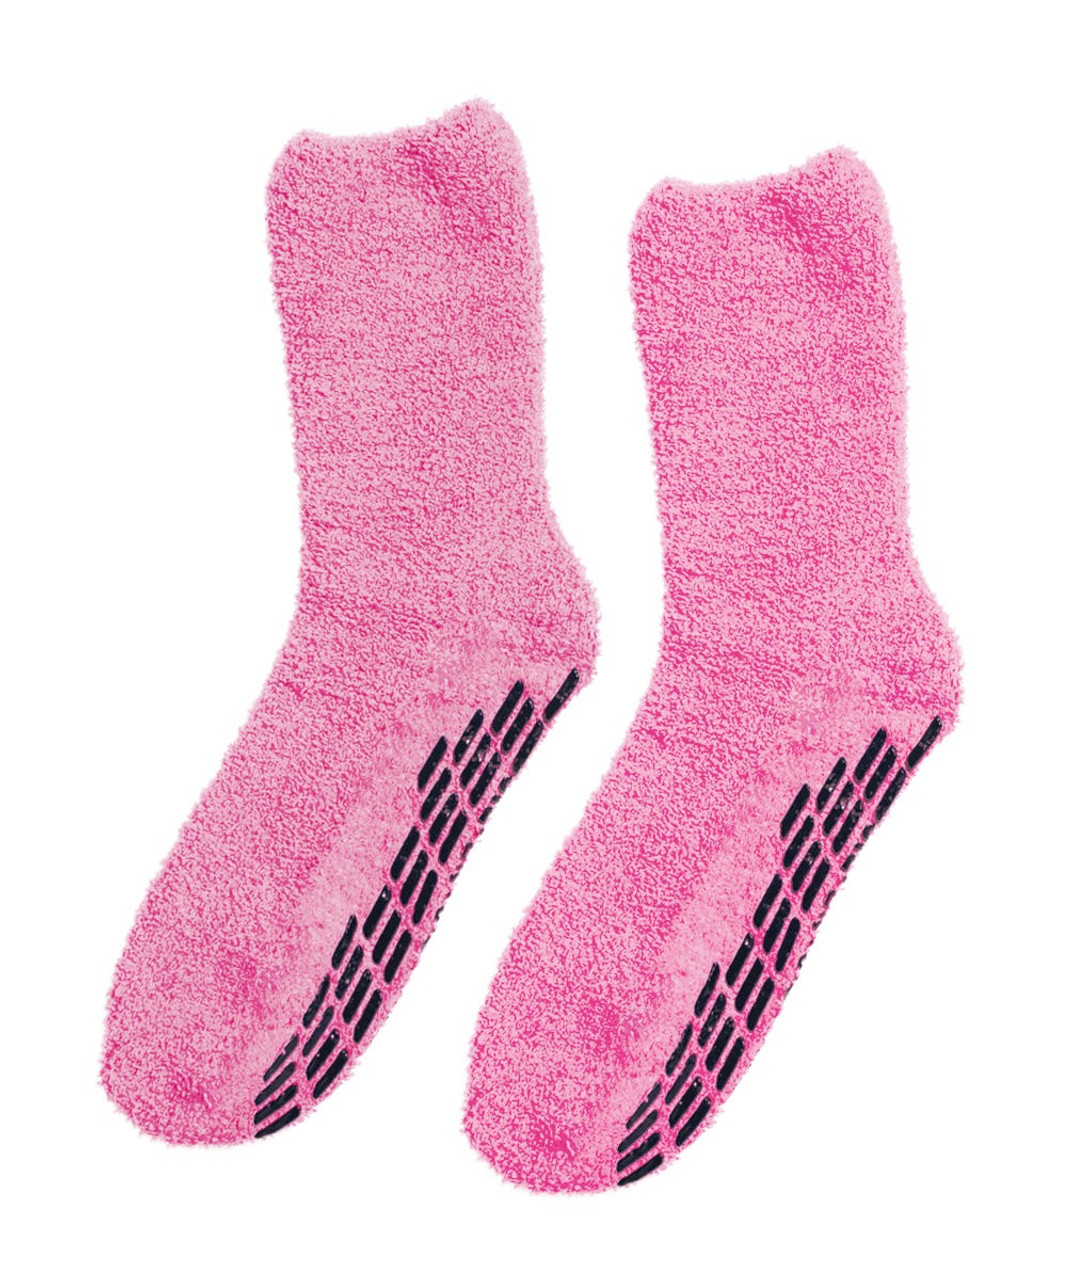 Silverts SV19140 Best Gripper Hospital Socks Men & Women - Slipper Socks Pink, Size=OS, SV19140-SV14-OS